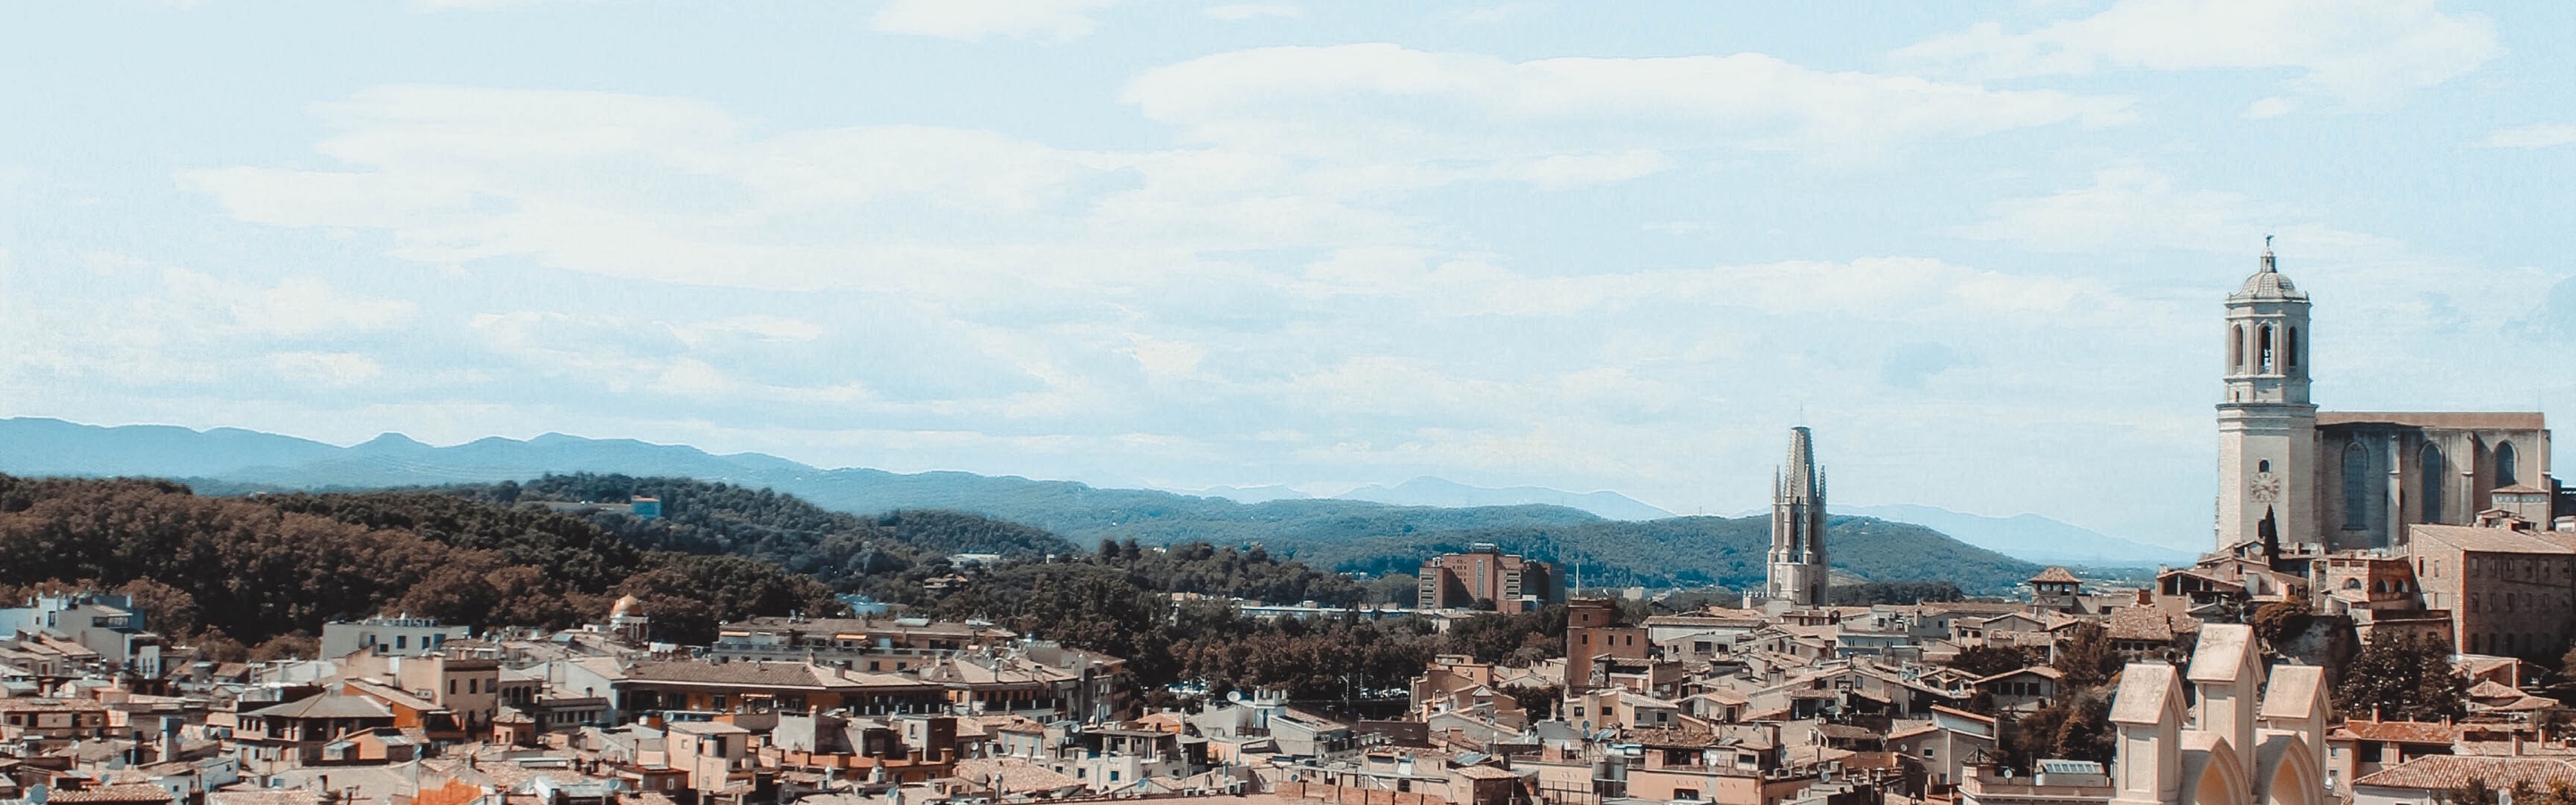 Vista de Girona desde arriba